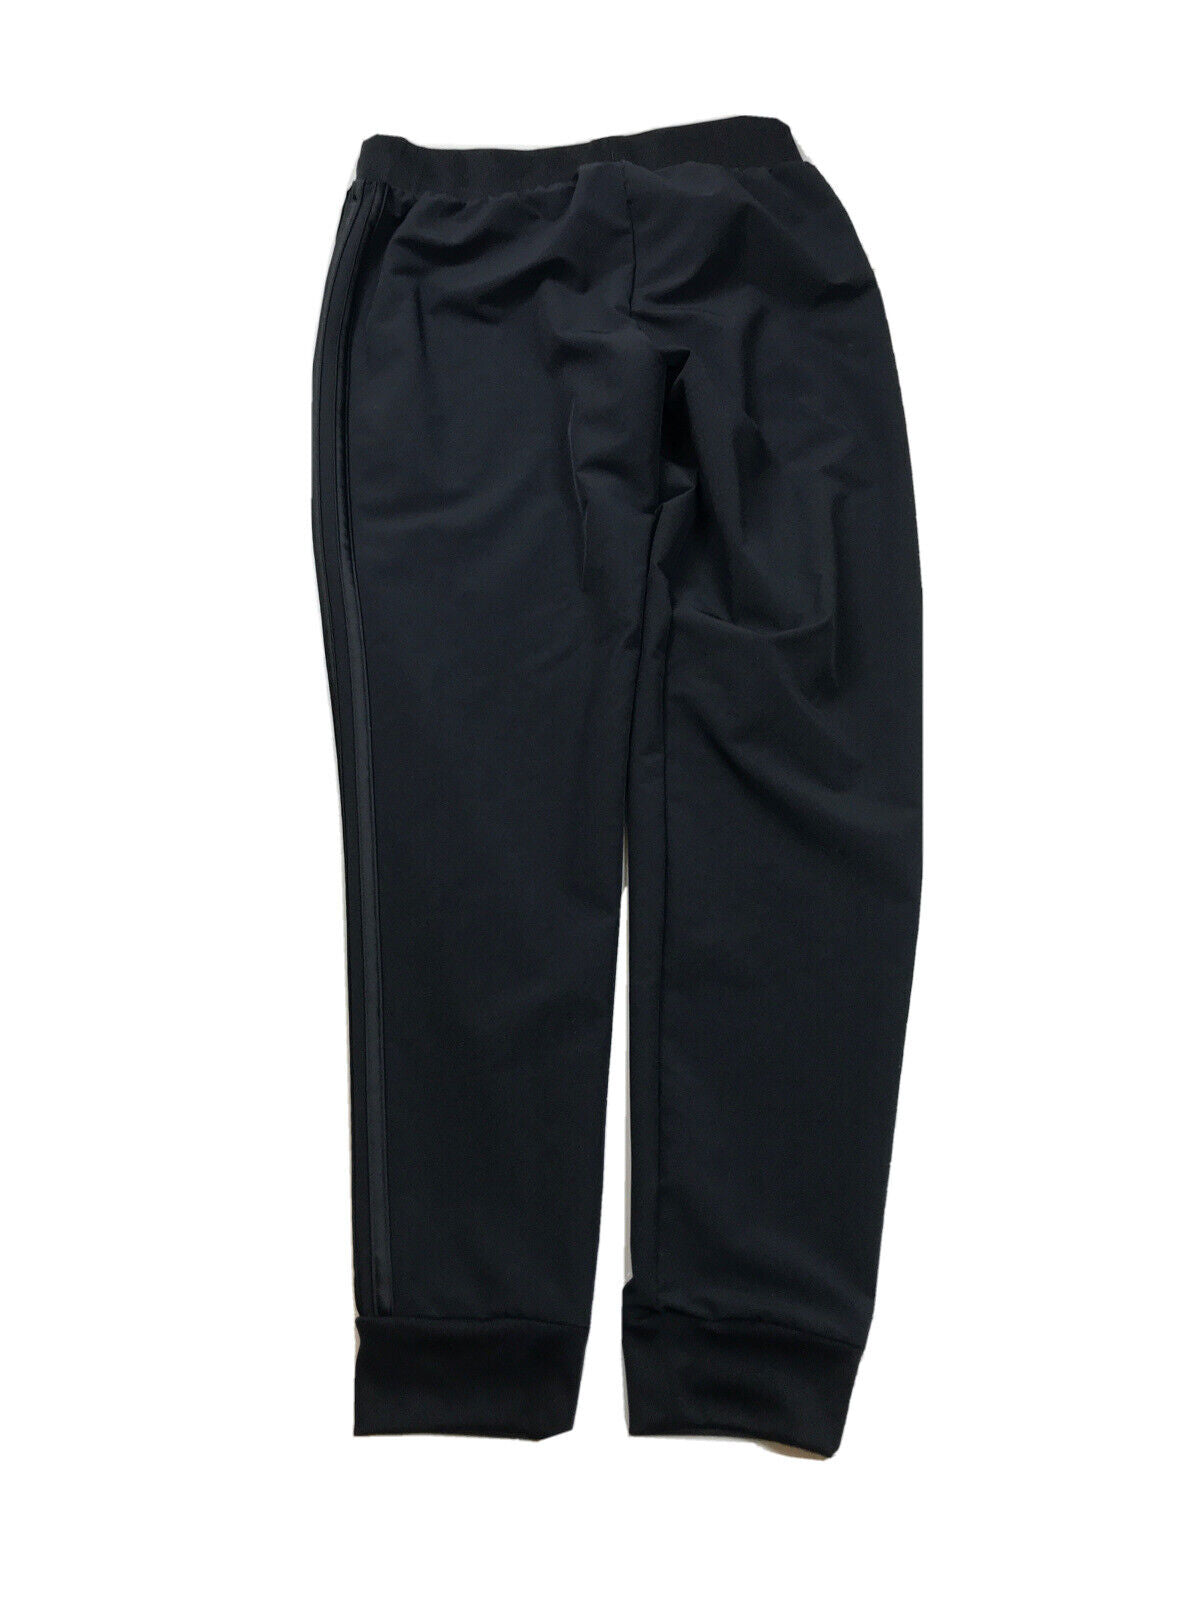 adidas Tiro 19 - Pantalones deportivos deportivos para mujer, color negro, talla S